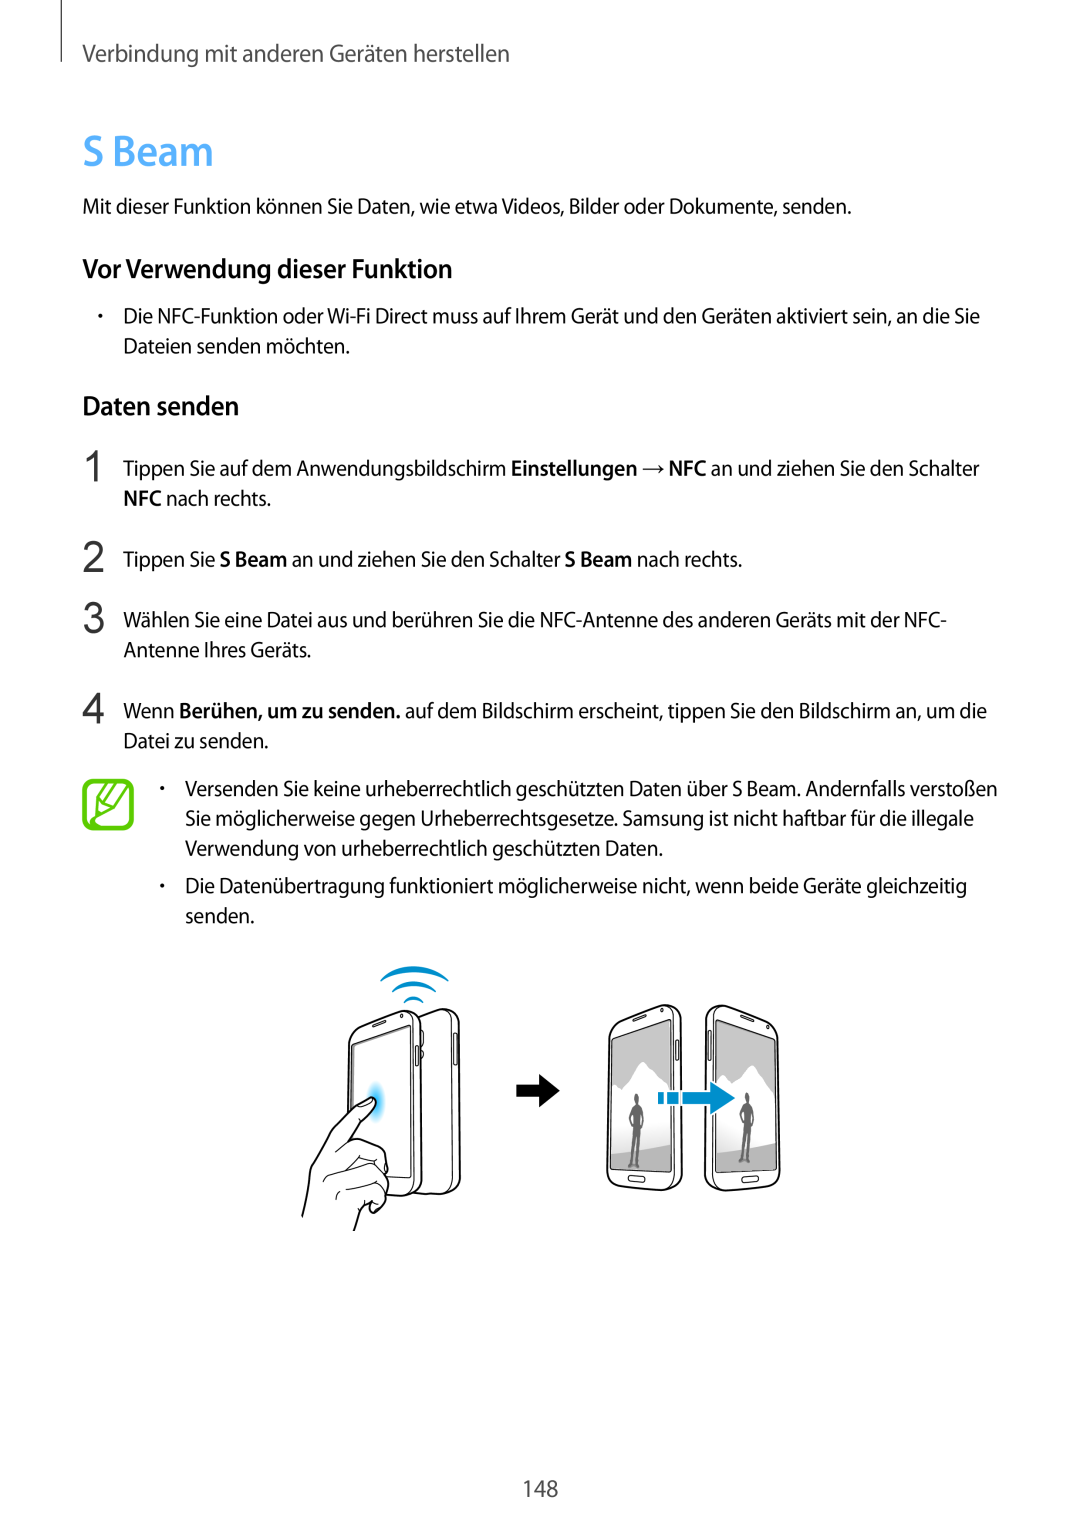 Samsung SM-G901FZWAEUR S Beam, Daten senden, Vor Verwendung dieser Funktion, Verbindung mit anderen Geräten herstellen 